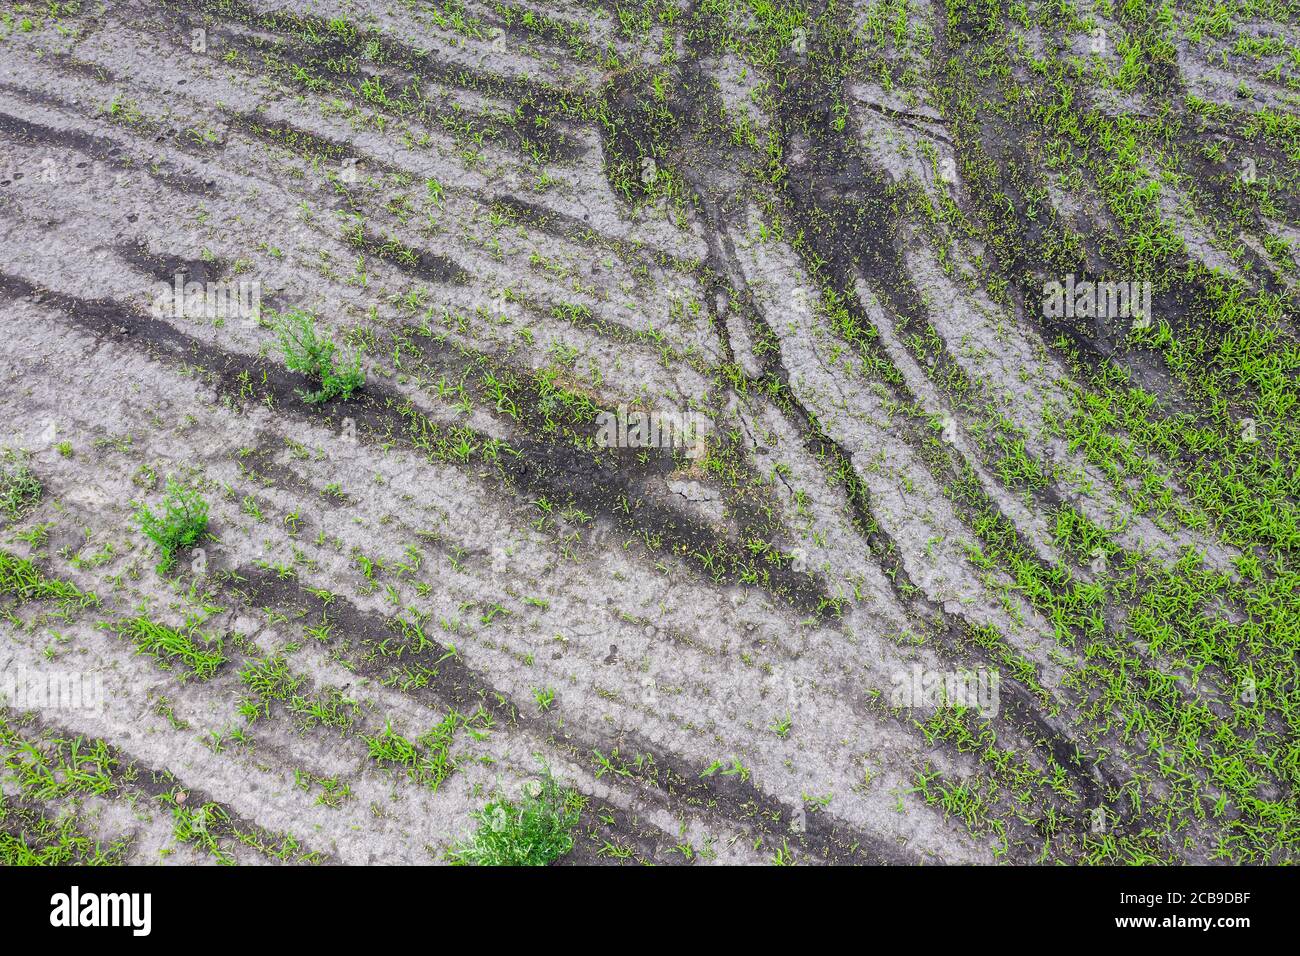 Kulturland mit wachsenden grünen jungen Setzlingen. Landwirtschaftlicher Hintergrund. Luftaufnahme von oben Stockfoto